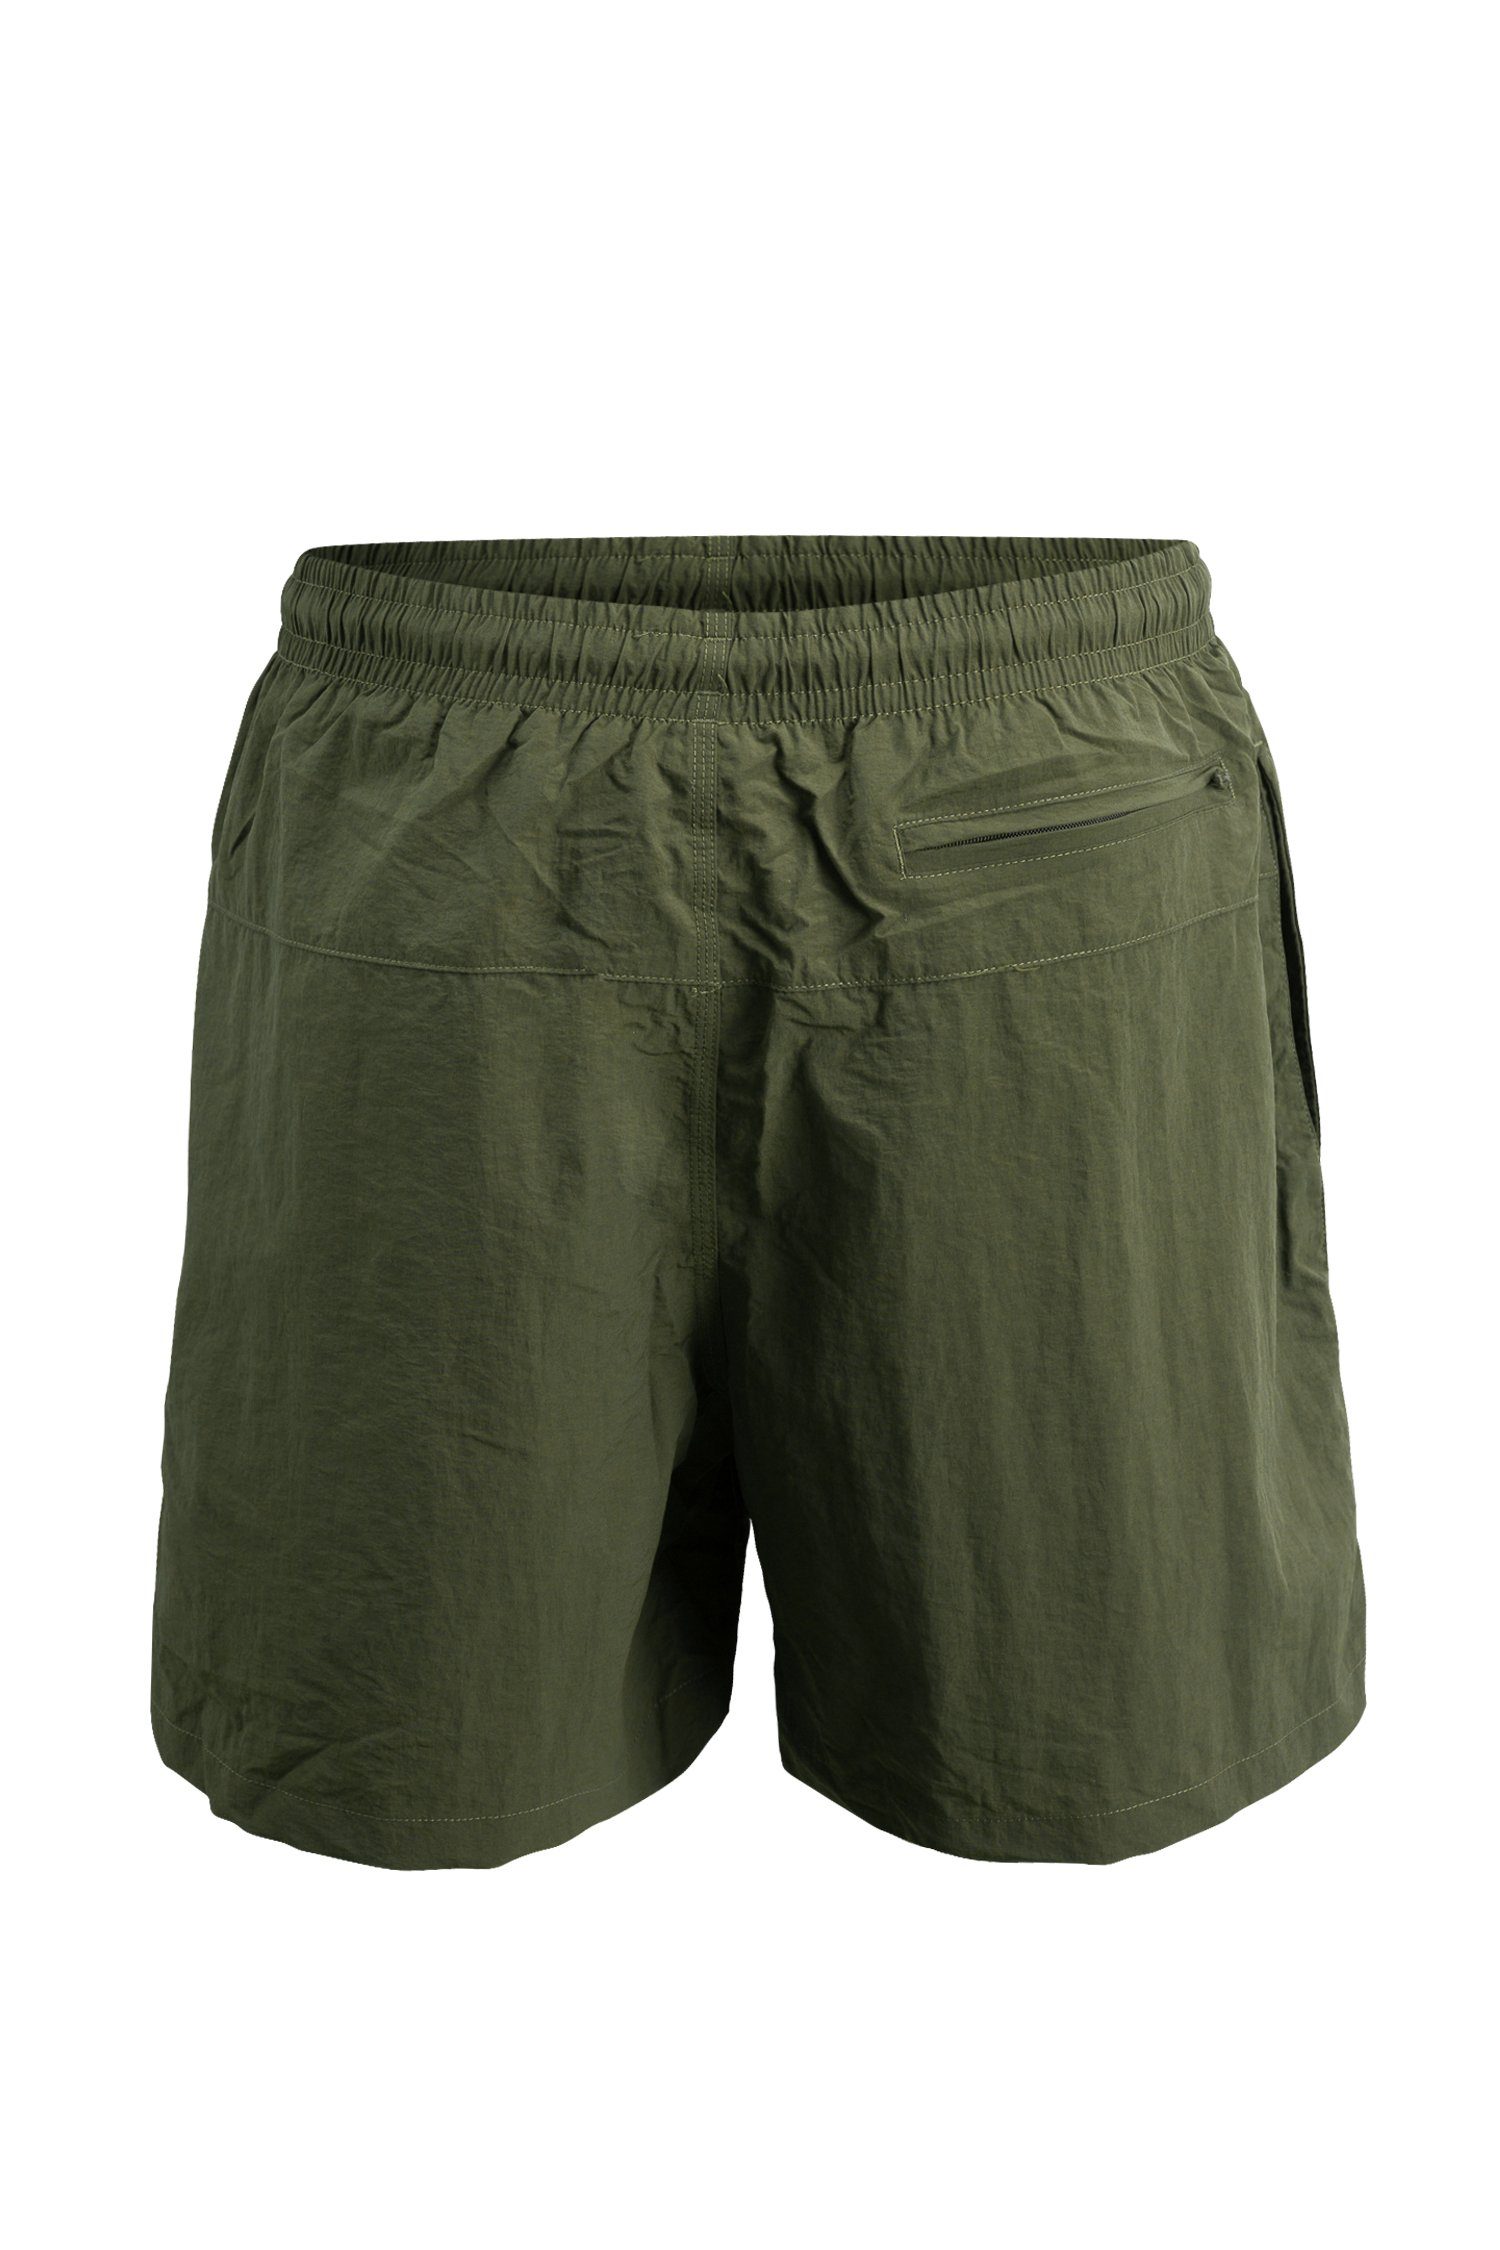 Badehosen Badeshorts schnelltrocknend Shorts - Swim Manufaktur13 Olive/Khaki